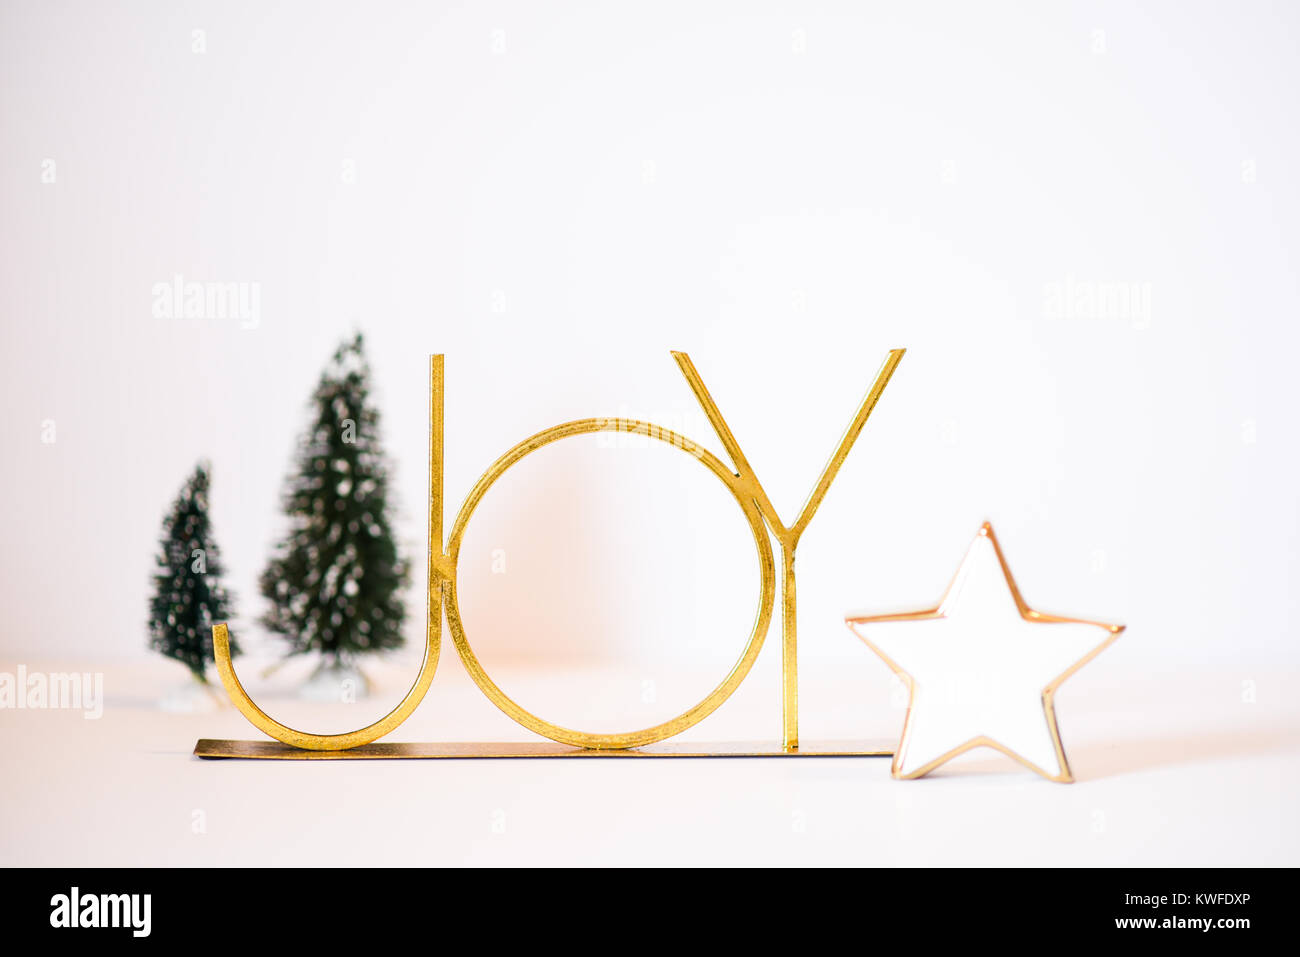 Weihnachten Szene mit einem gold Freude, creme Star und Weihnachtsbäumen Stockfoto